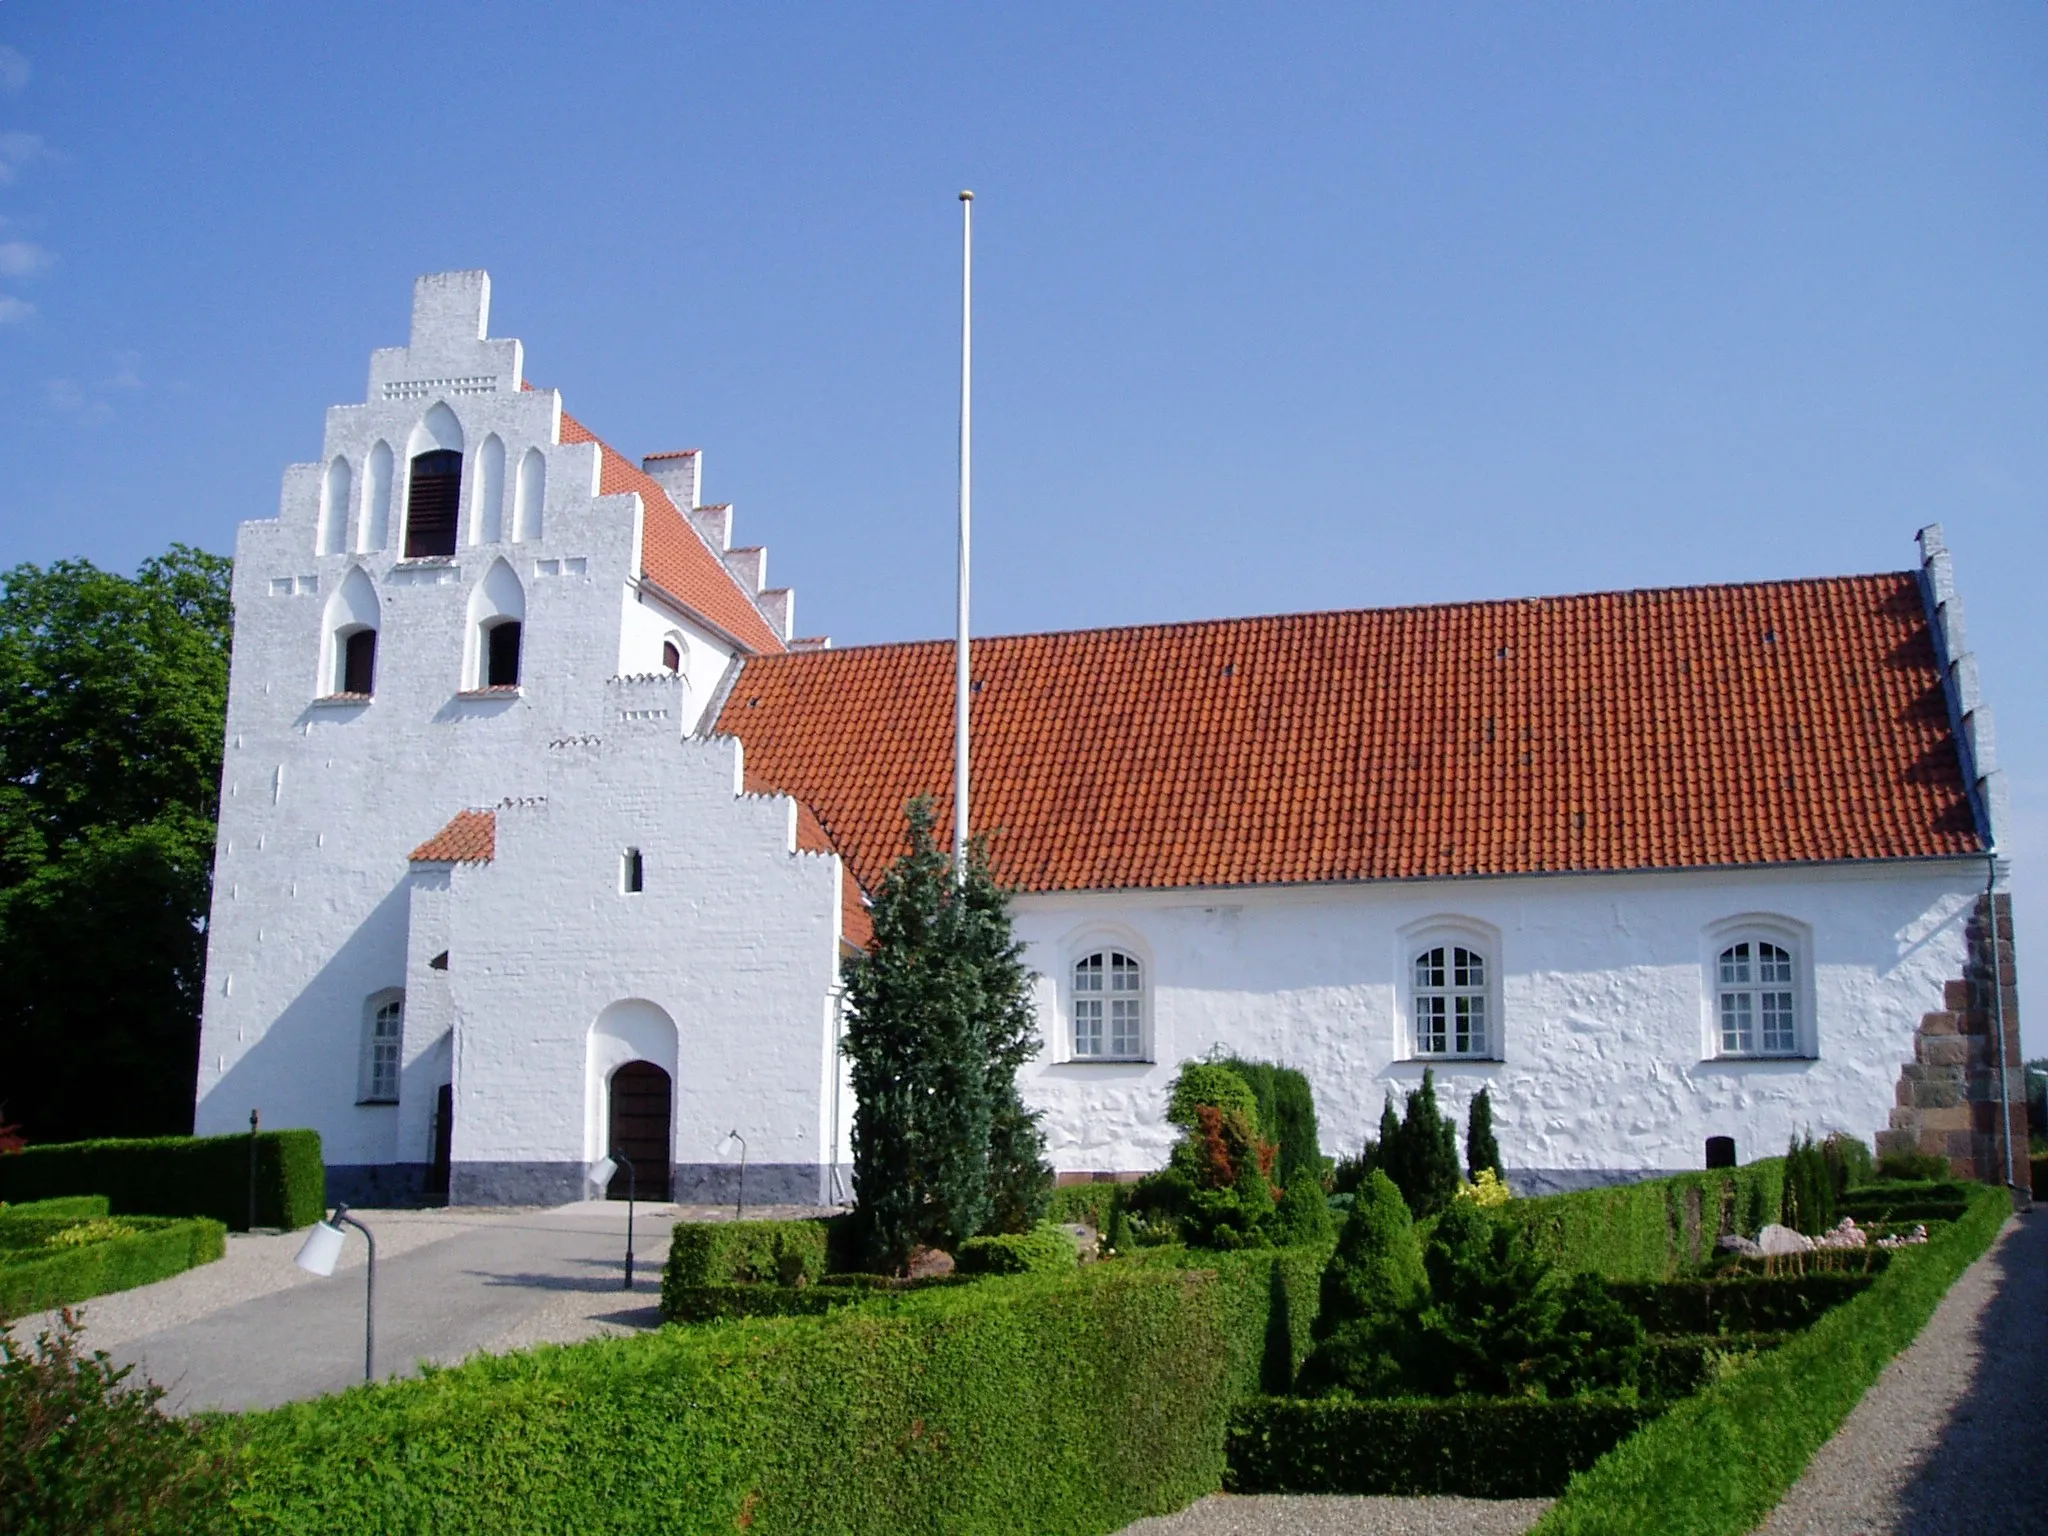 Image of Ørbæk